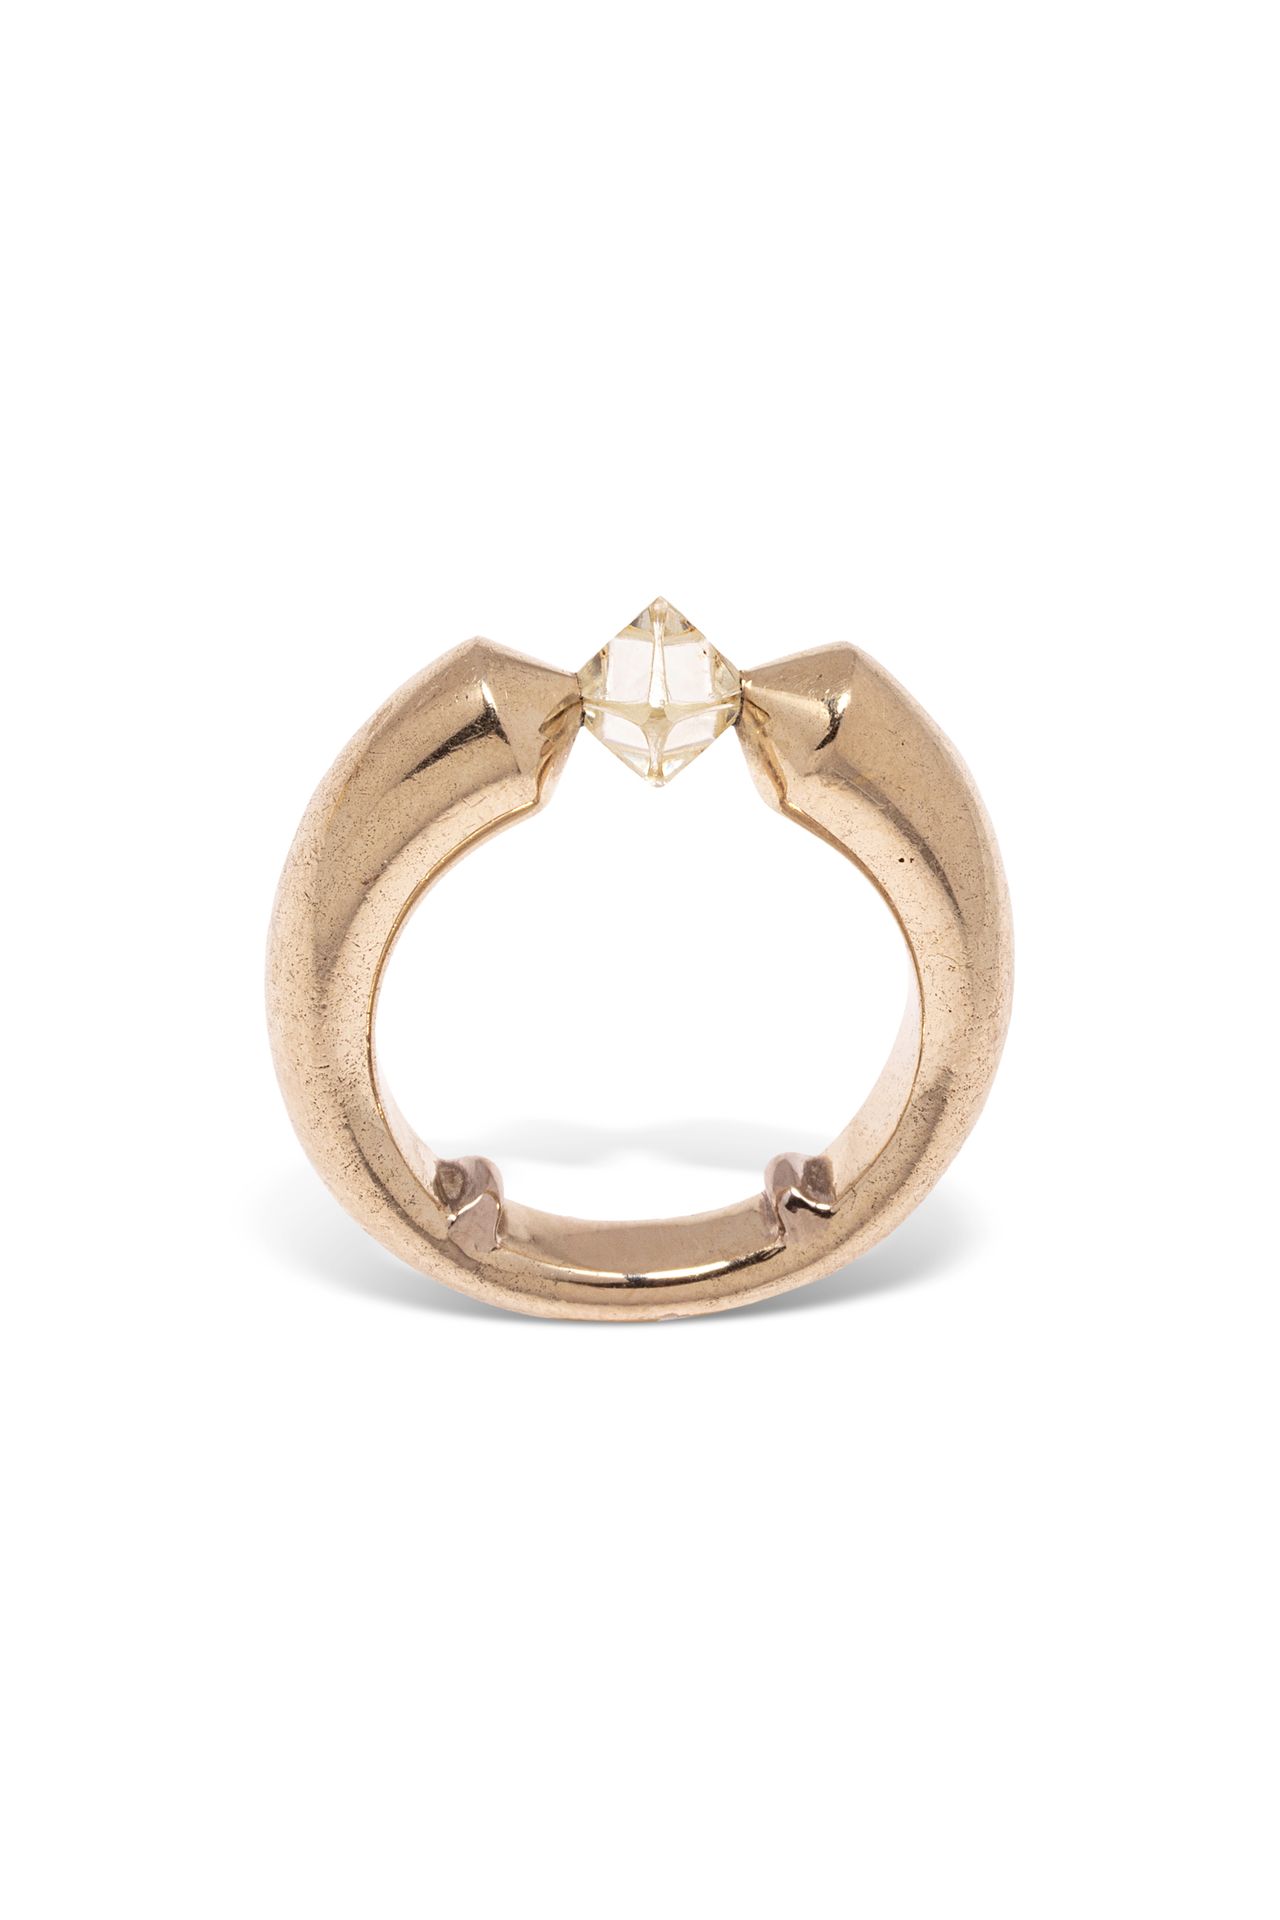 Null 18K(750)黄金戒指，镶嵌着一颗八面体的毛坯钻石。

部分主标记。

鹰头标志。

手指尺寸：57（带缩小杆） - 毛重：19.79克。